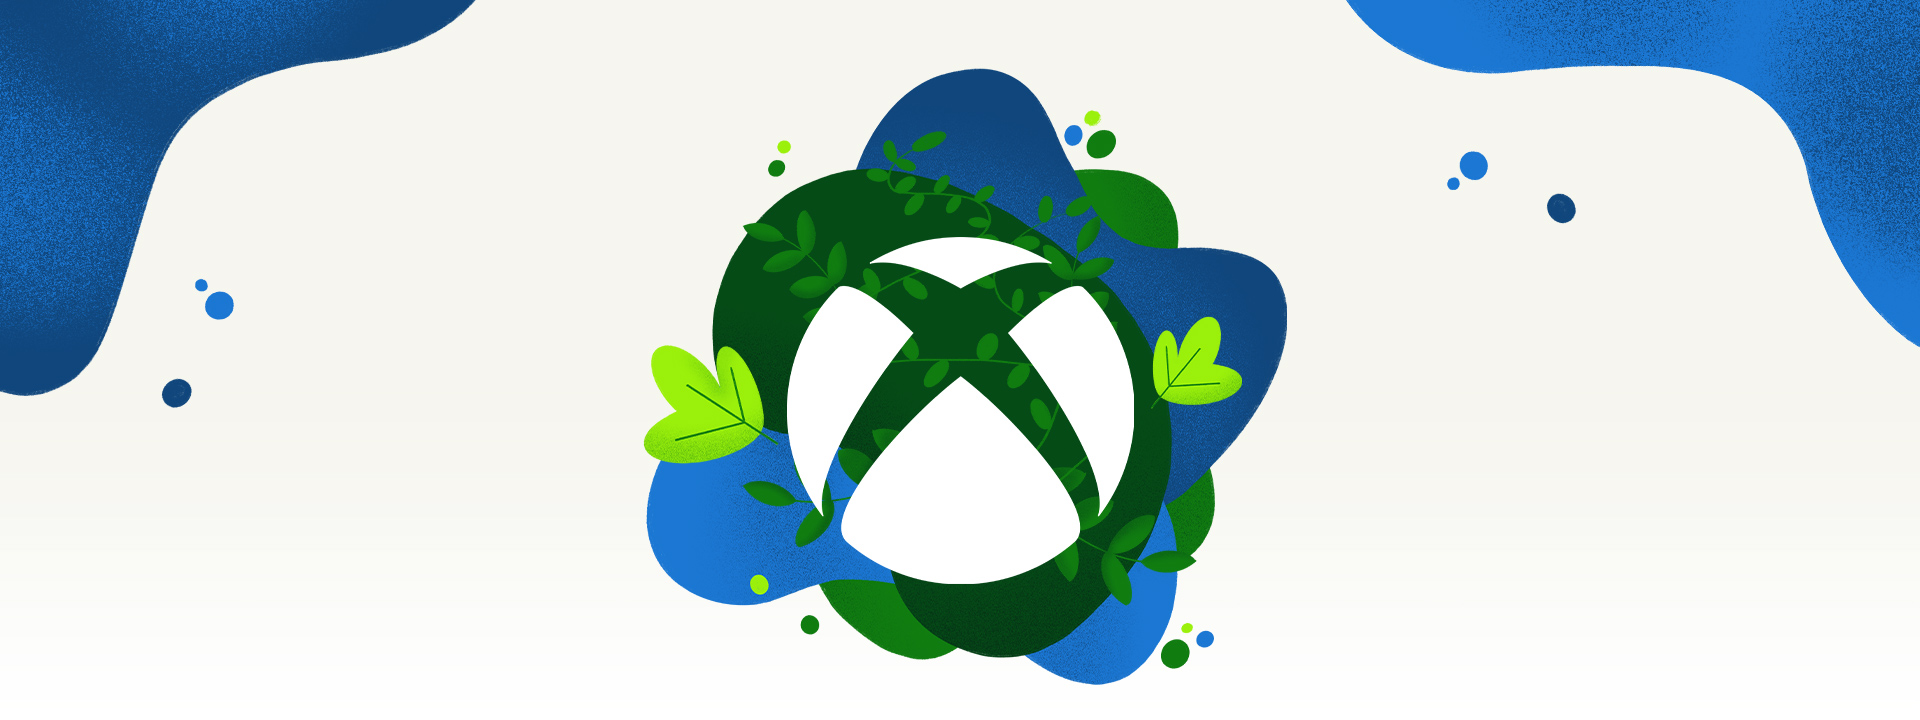 Um logotipo Xbox cercado por vegetação e respingos de água azul.